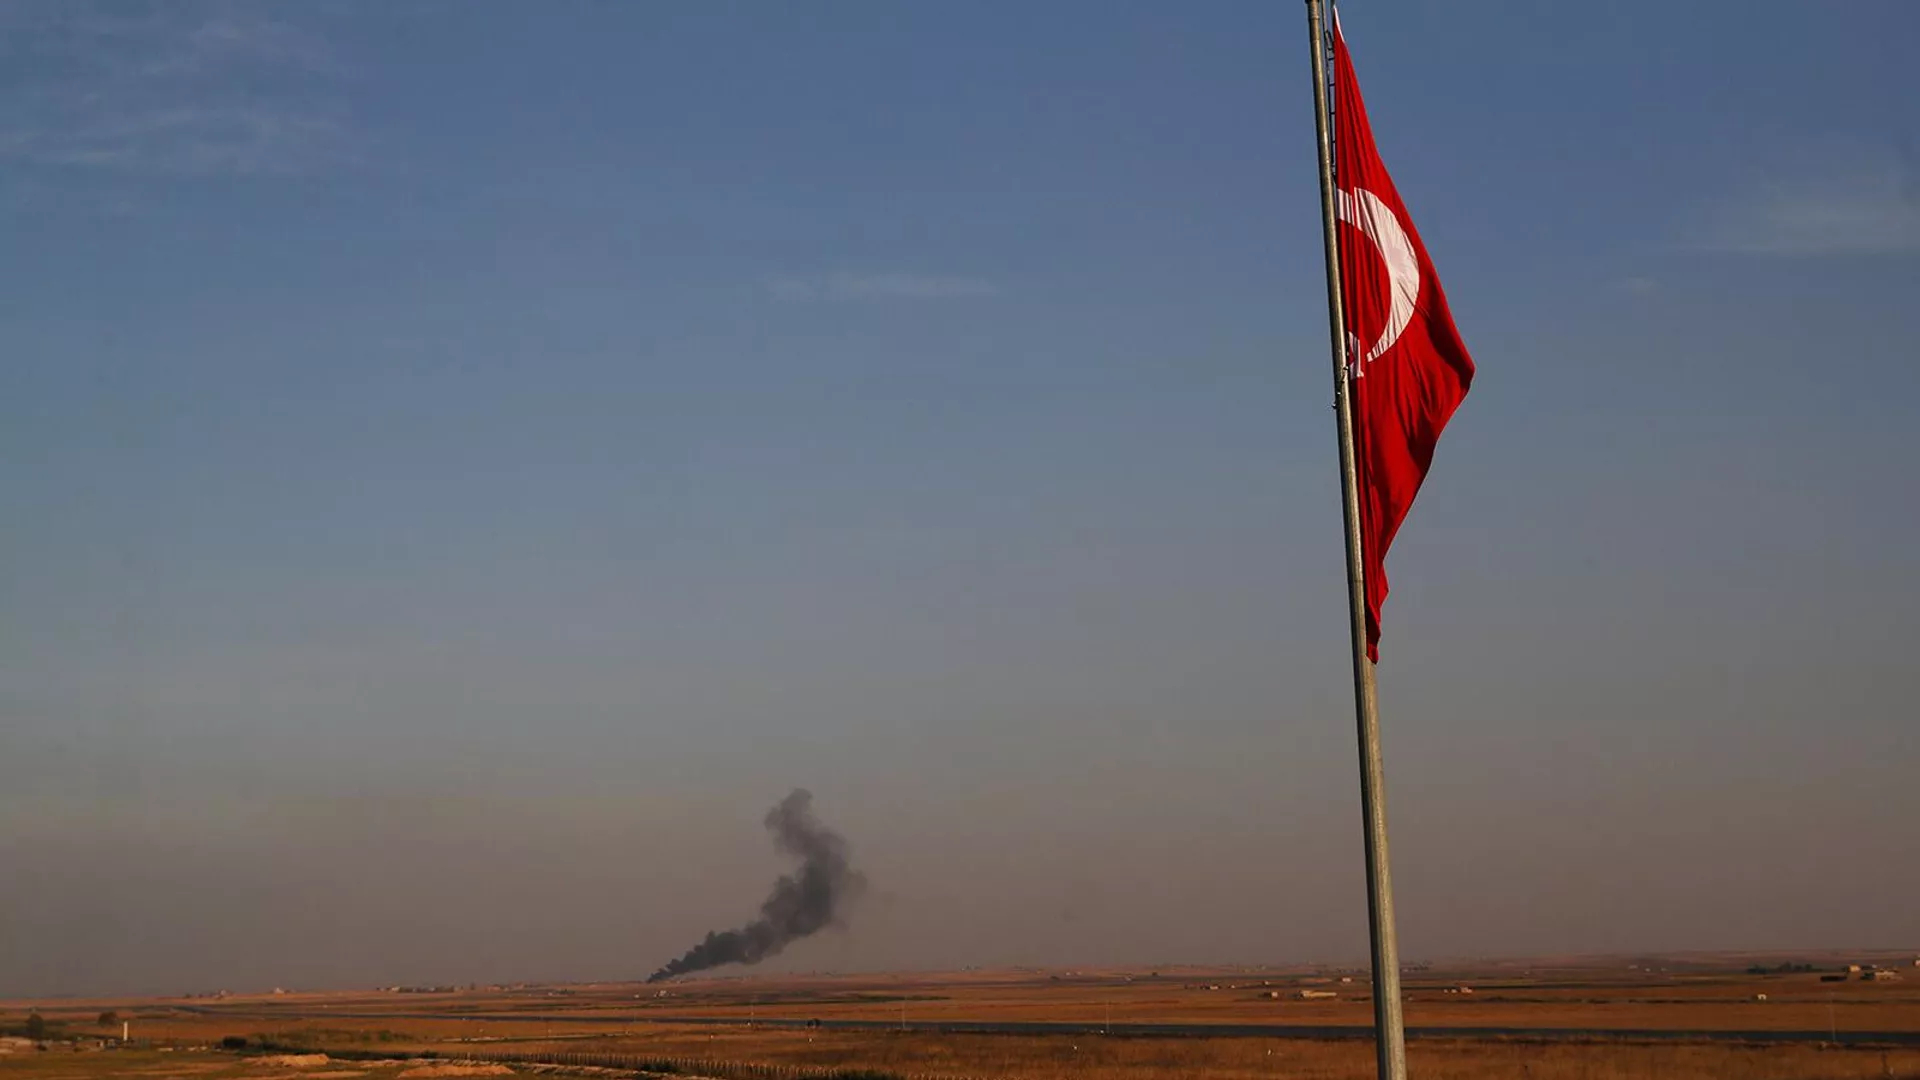 Թուրքական ԱԹՍ-ն Իրաքի հյուսիսում հարվածել է քրդերի մեքենային. կա զոհ և վիրավոր